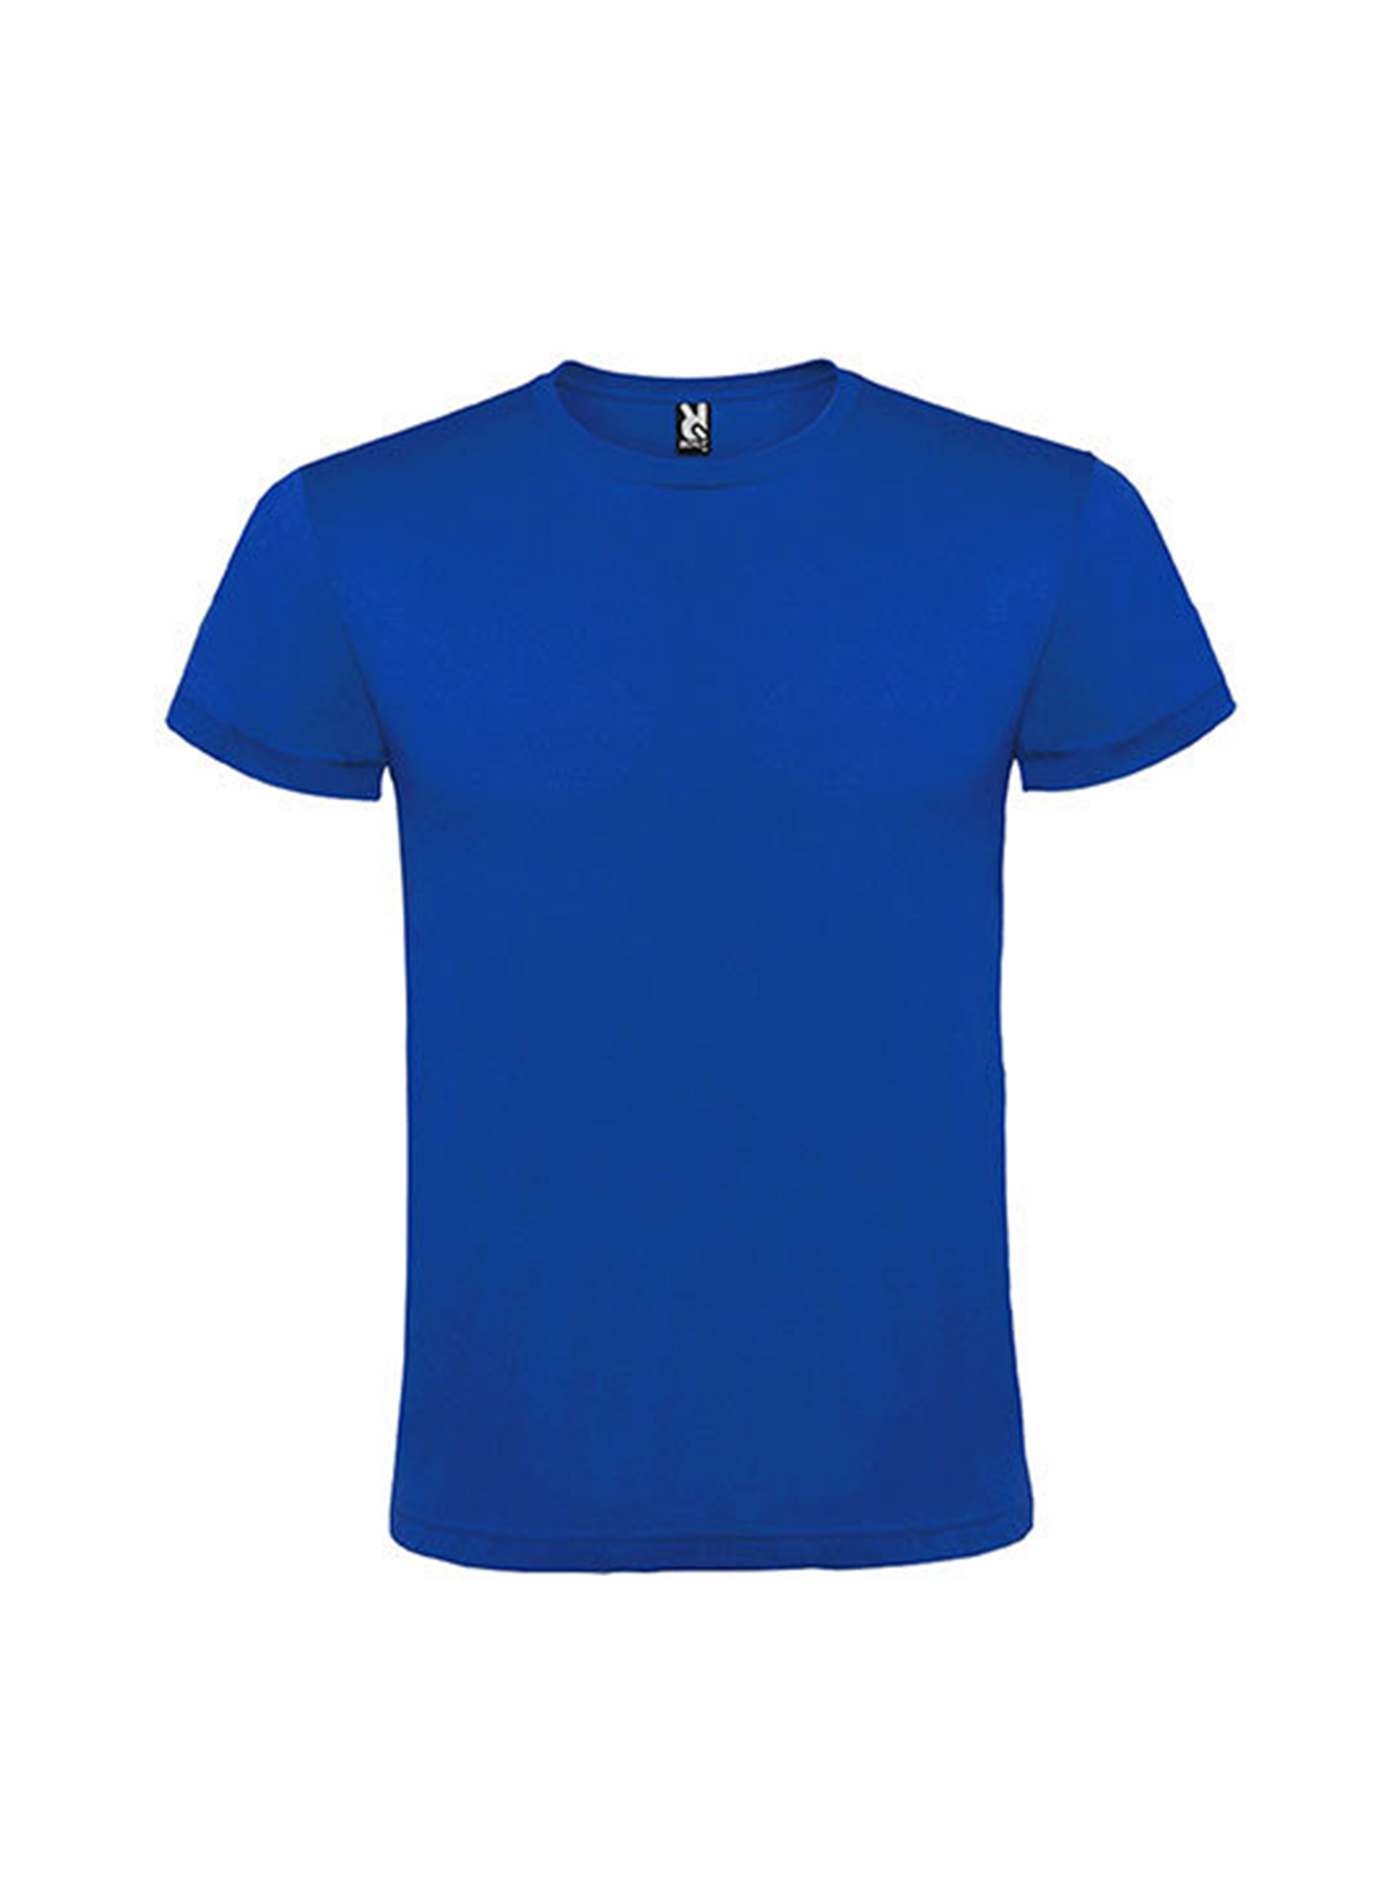 Pánské tričko Roly Atomic - Královská modrá L